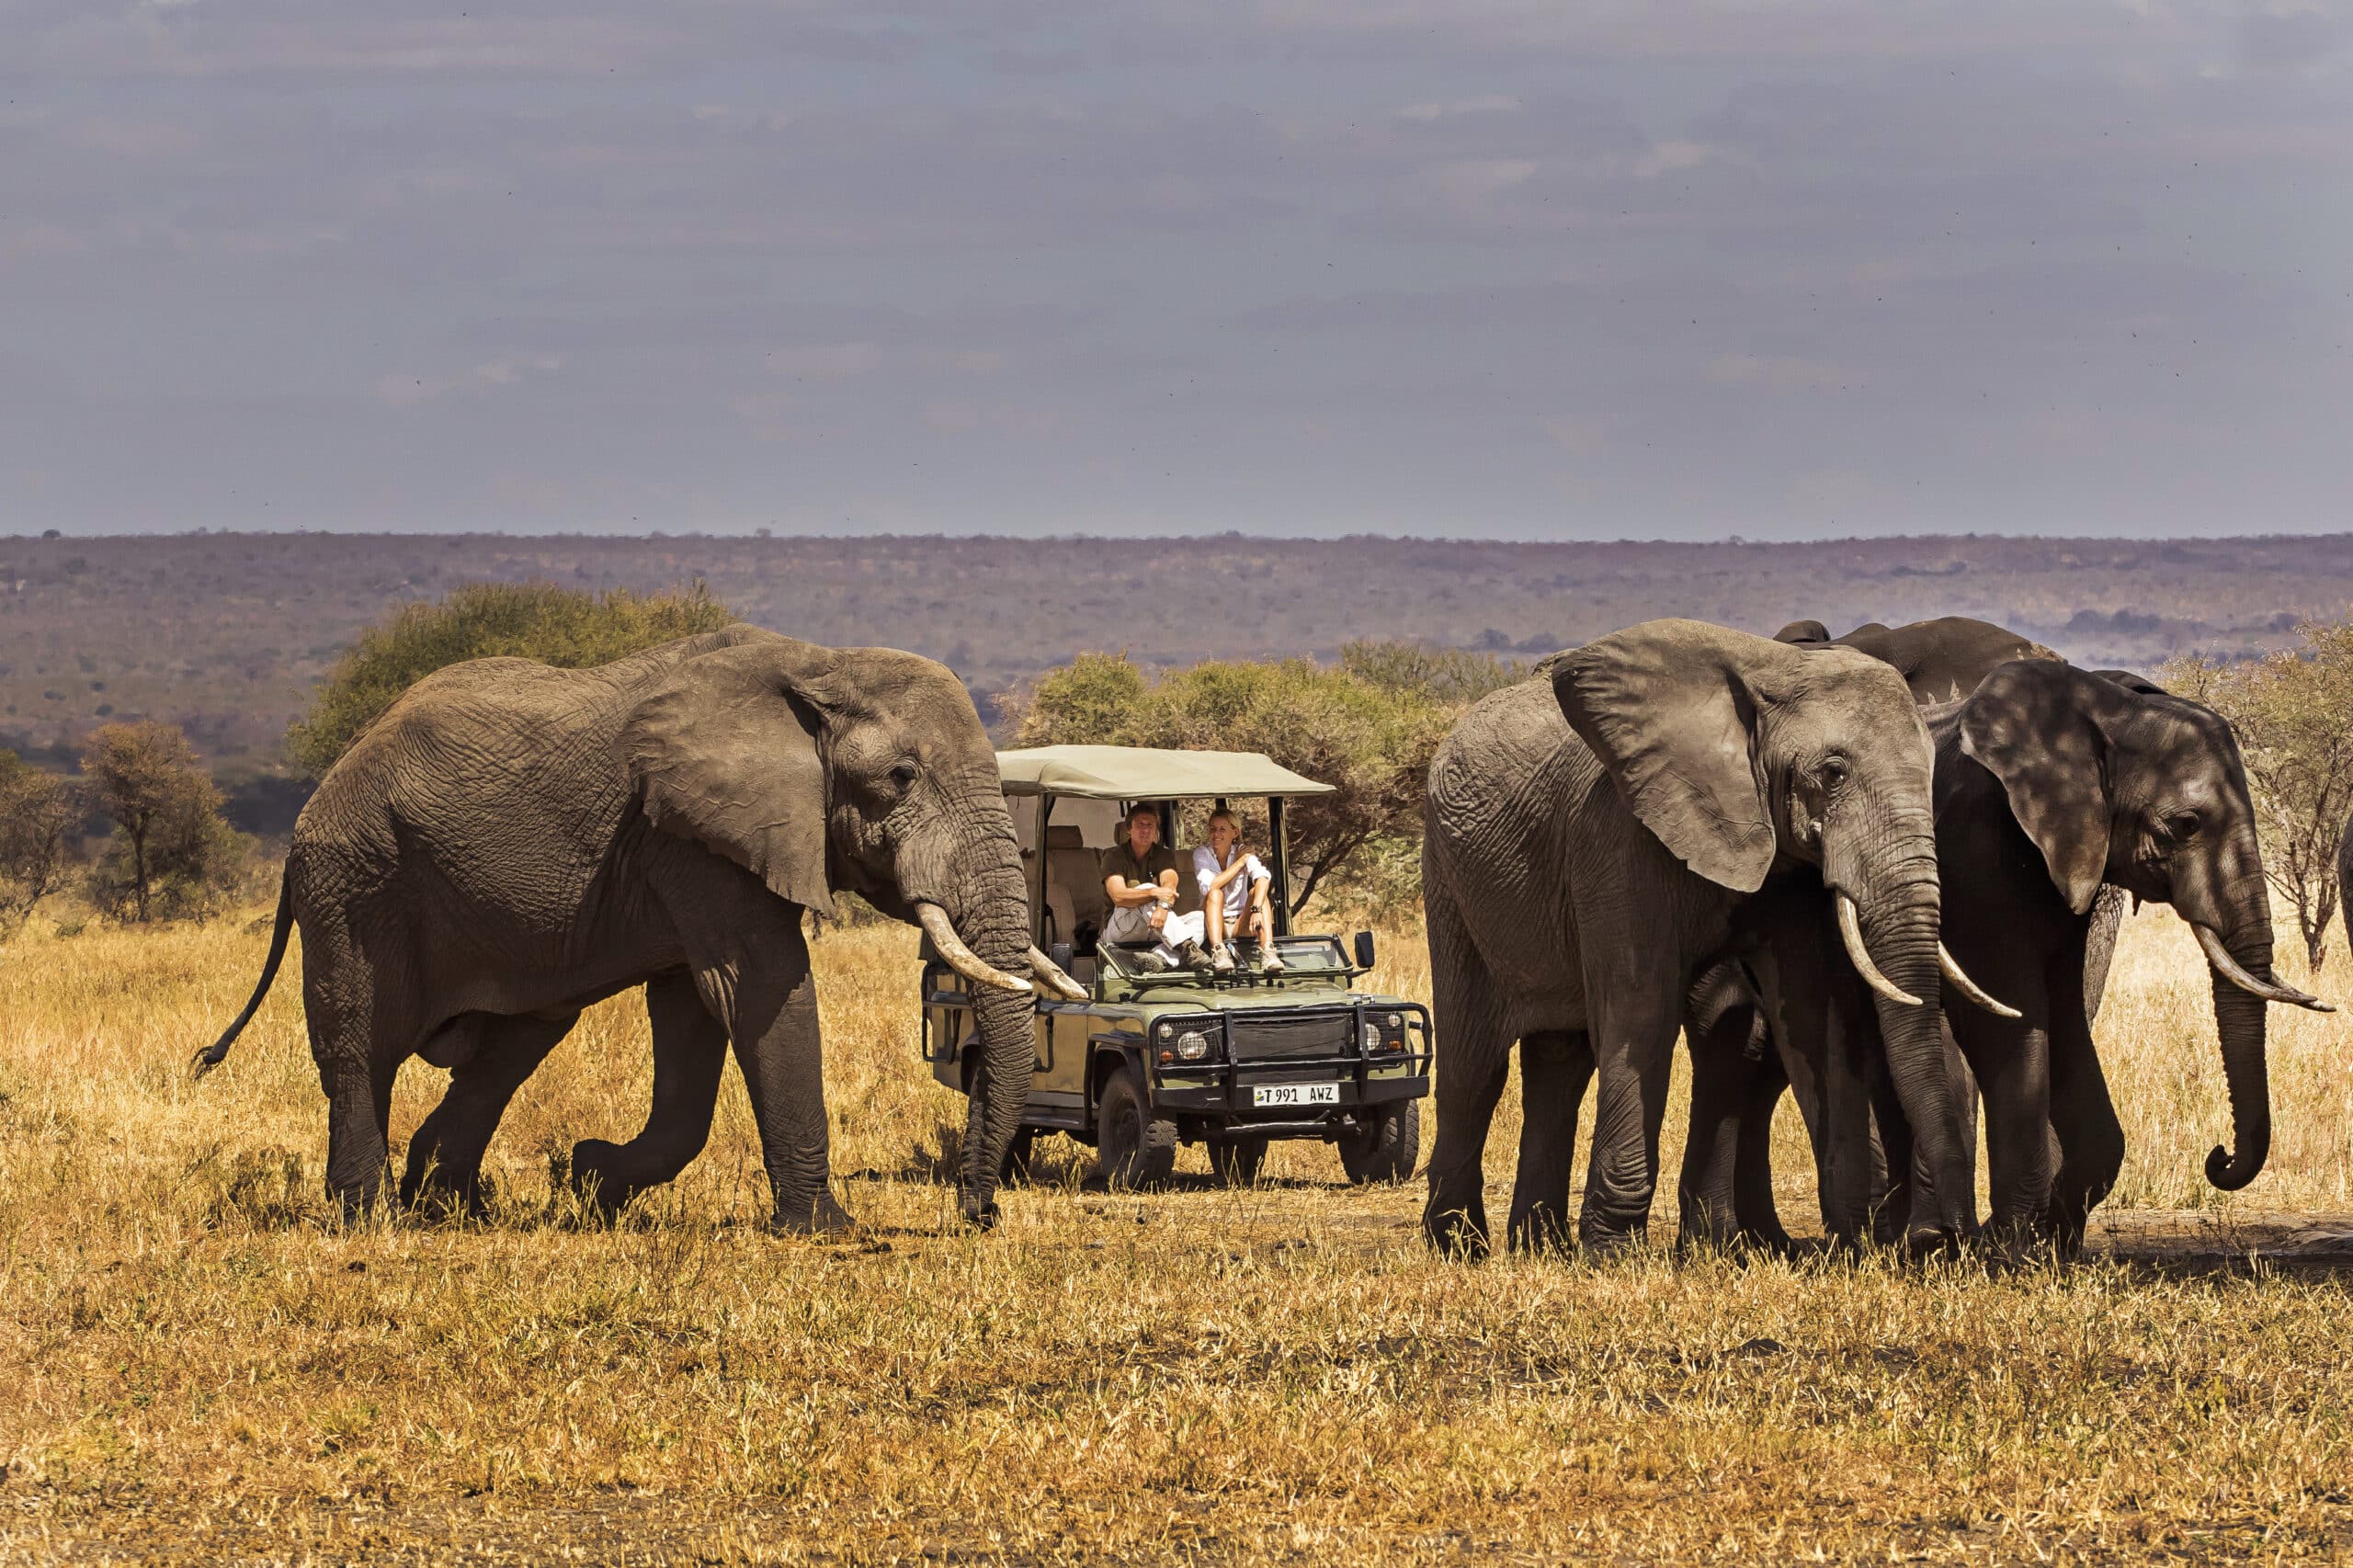 Activités de safari en 4x4 dans la savane pour observer la faune sauvage en Tanzanie.